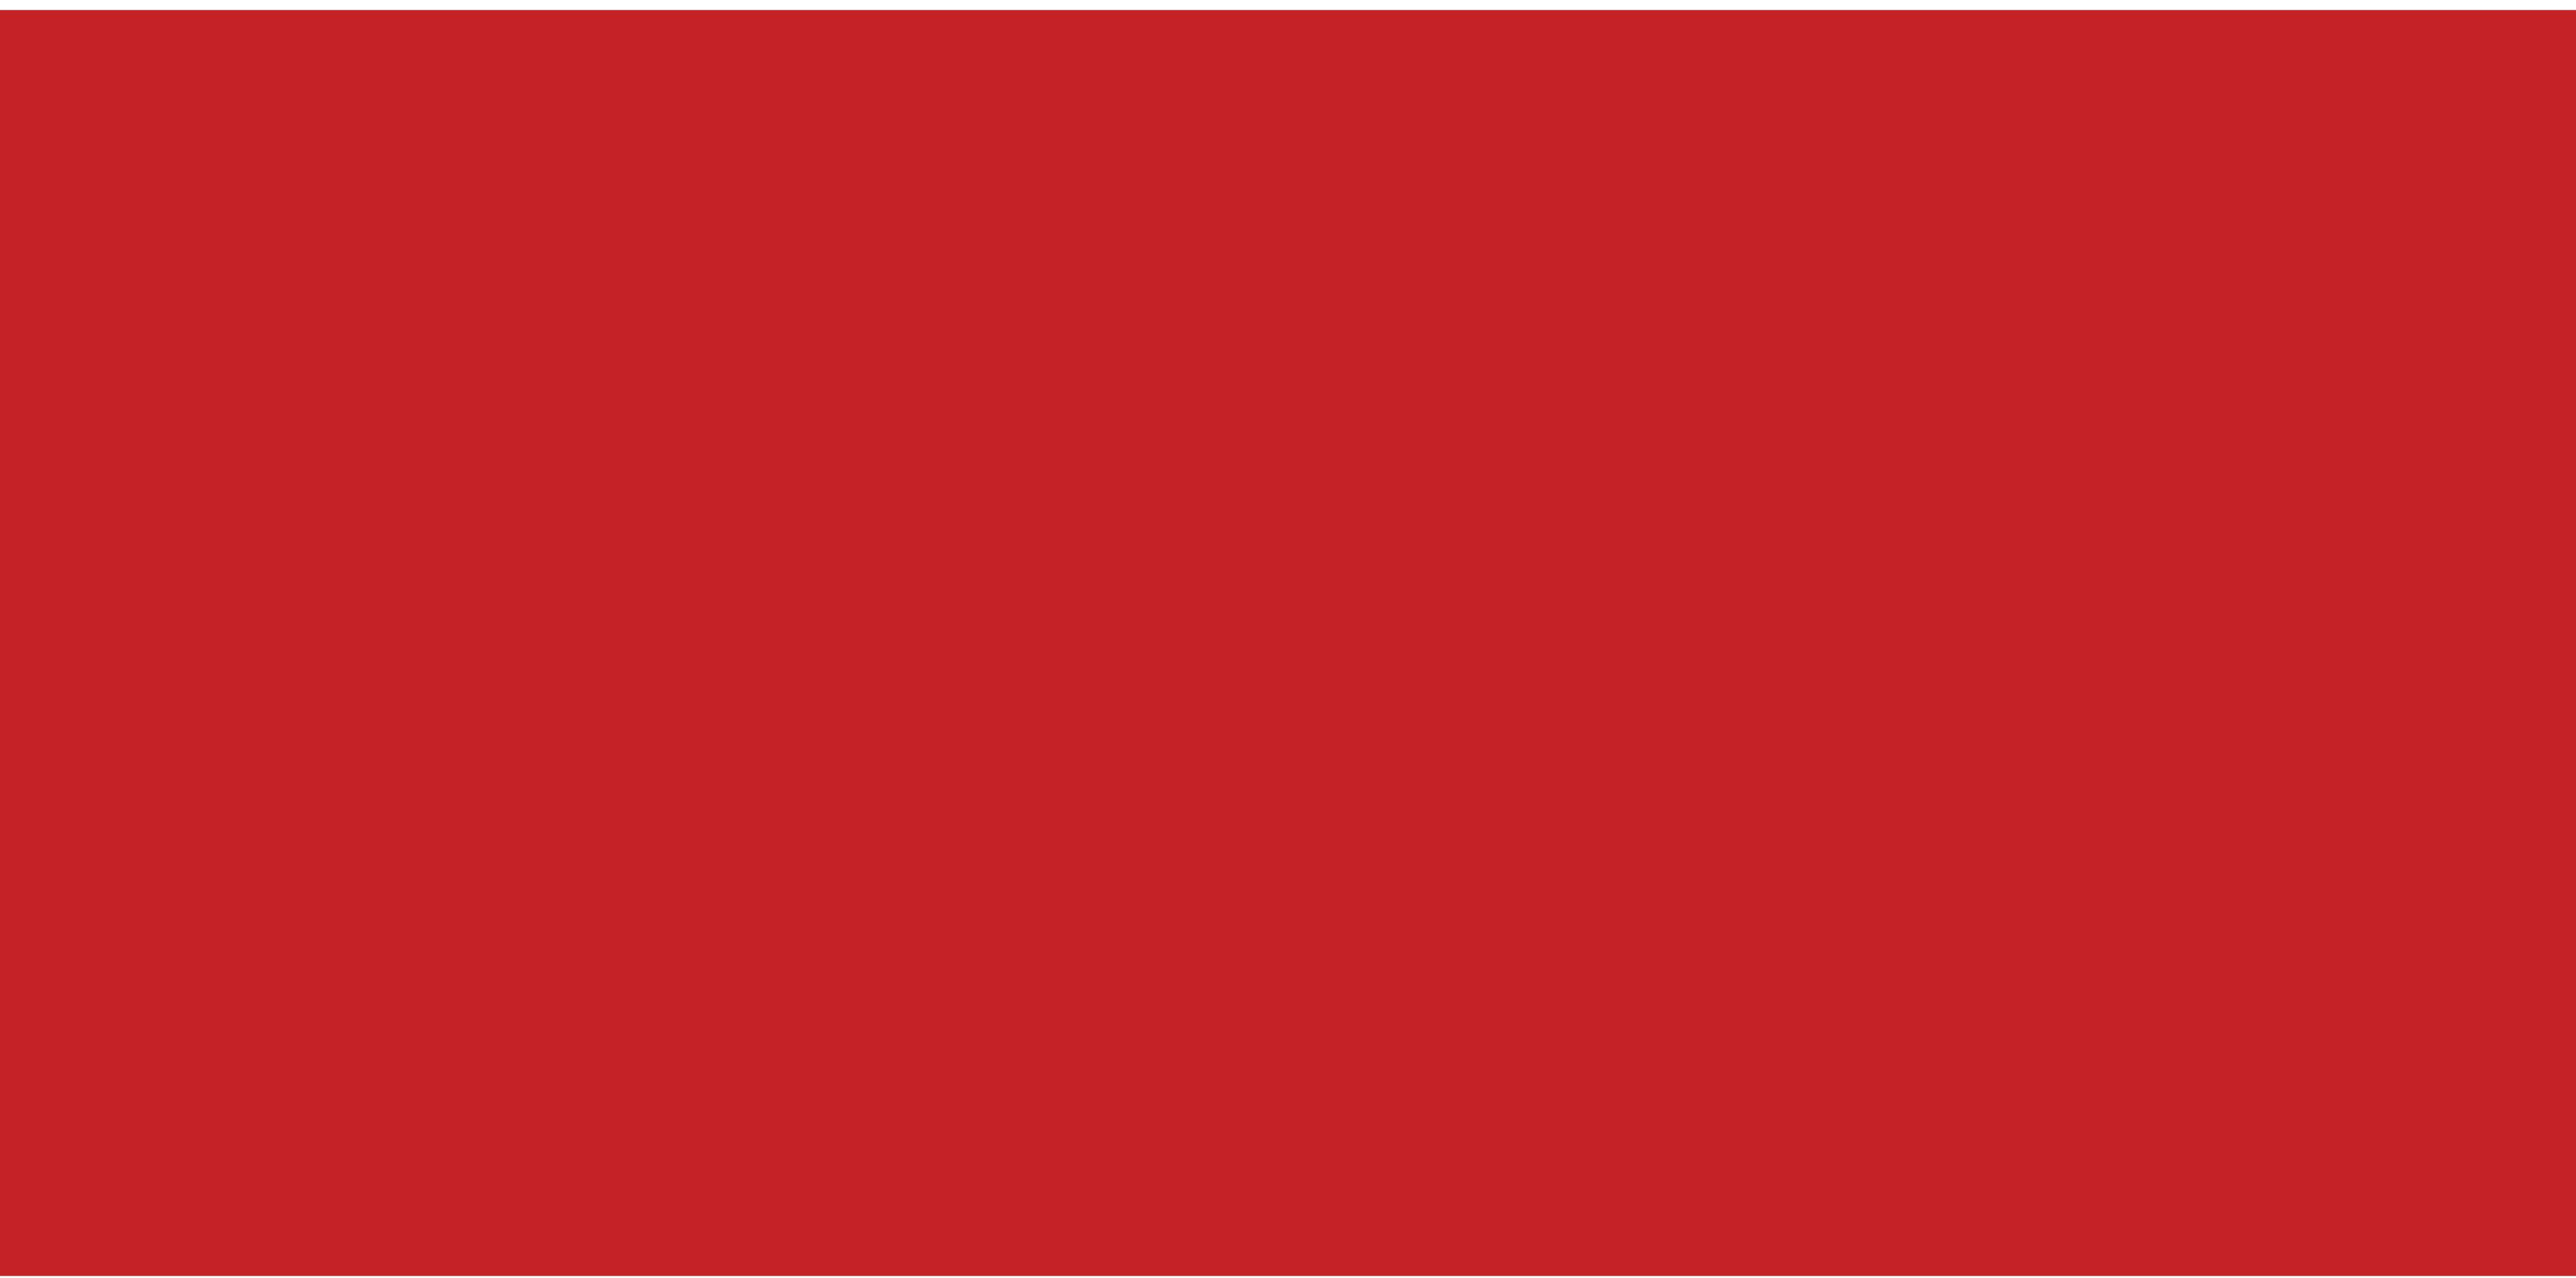 Керамогранит красный матовый. D-C-Fix 0.45х15.0м. D-C-Fix 15х0.45м пленка самоклеящаяся Уни мат бежевый. Картинки фон красный мат. Red hex